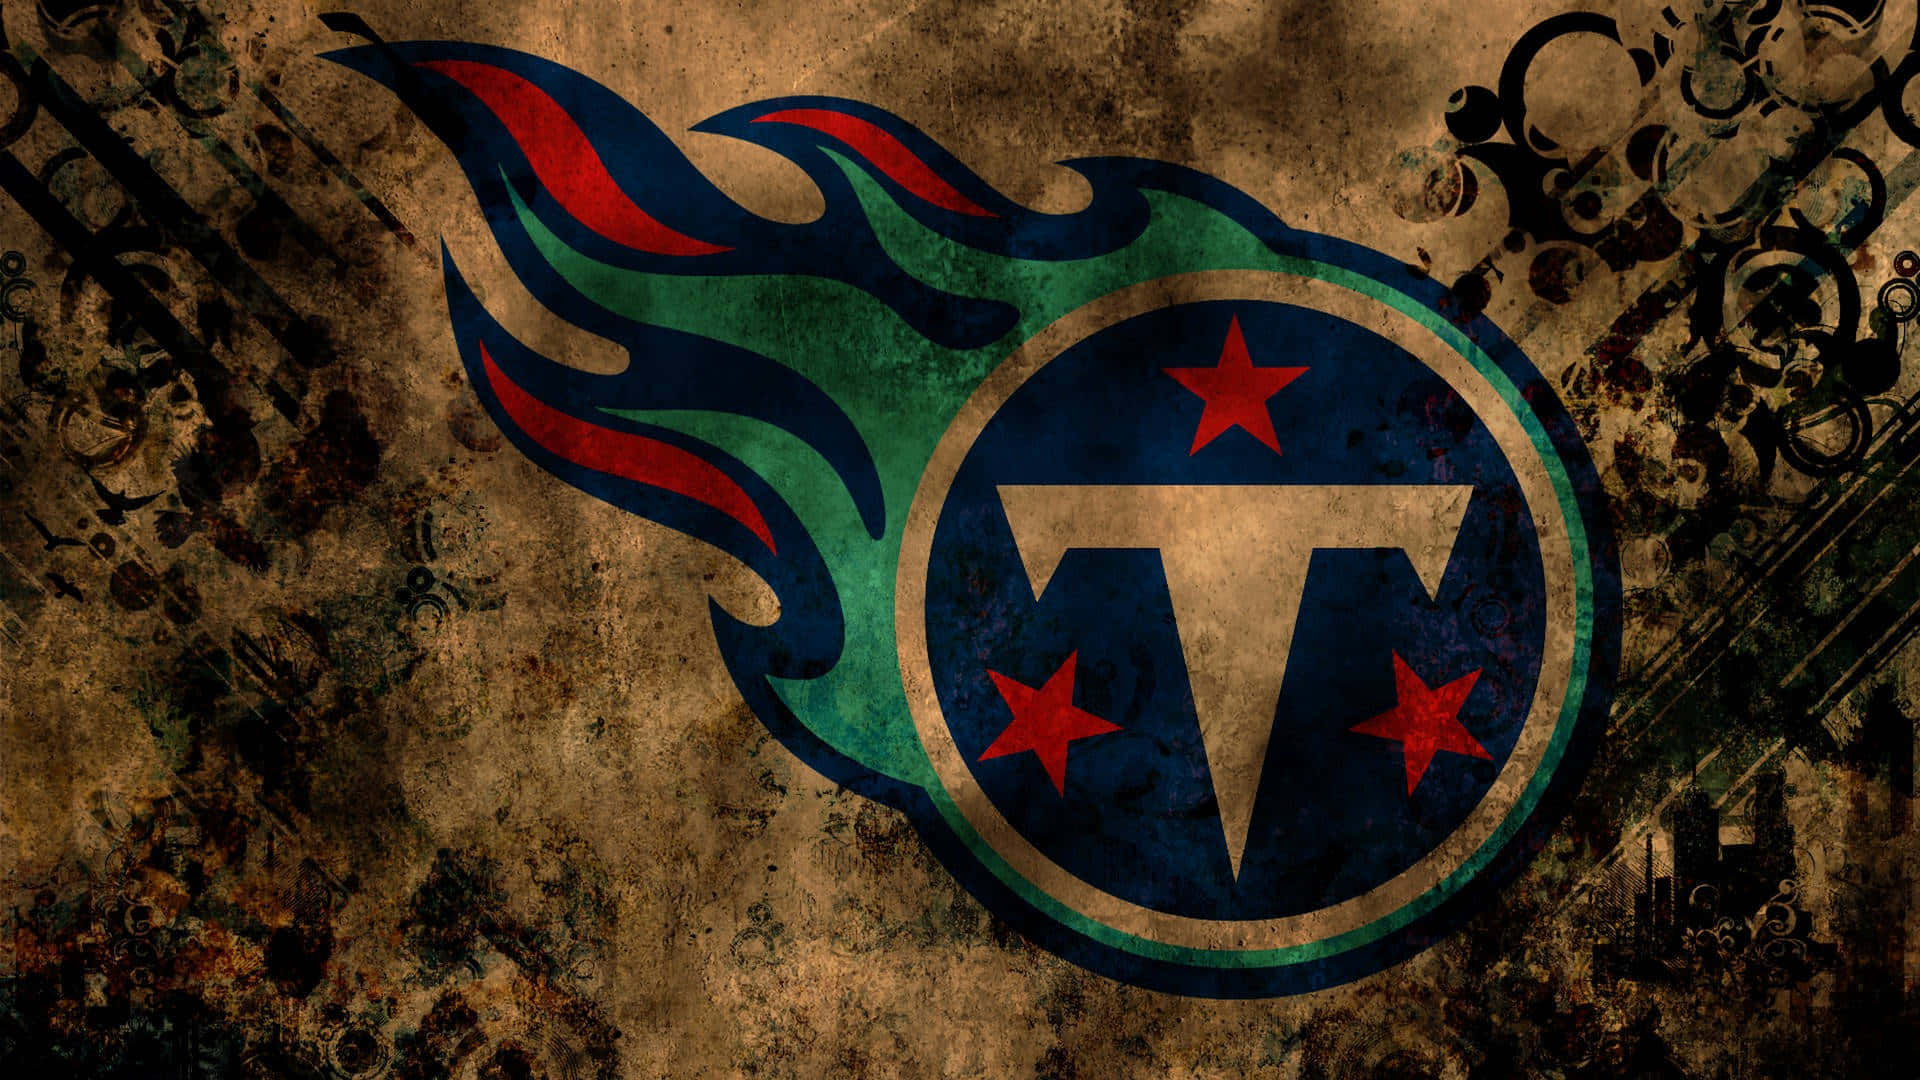 Zeigensie Ihre Begeisterung Für Ihr Lieblingsteam Der Nfl - Die Tennessee Titans! Wallpaper